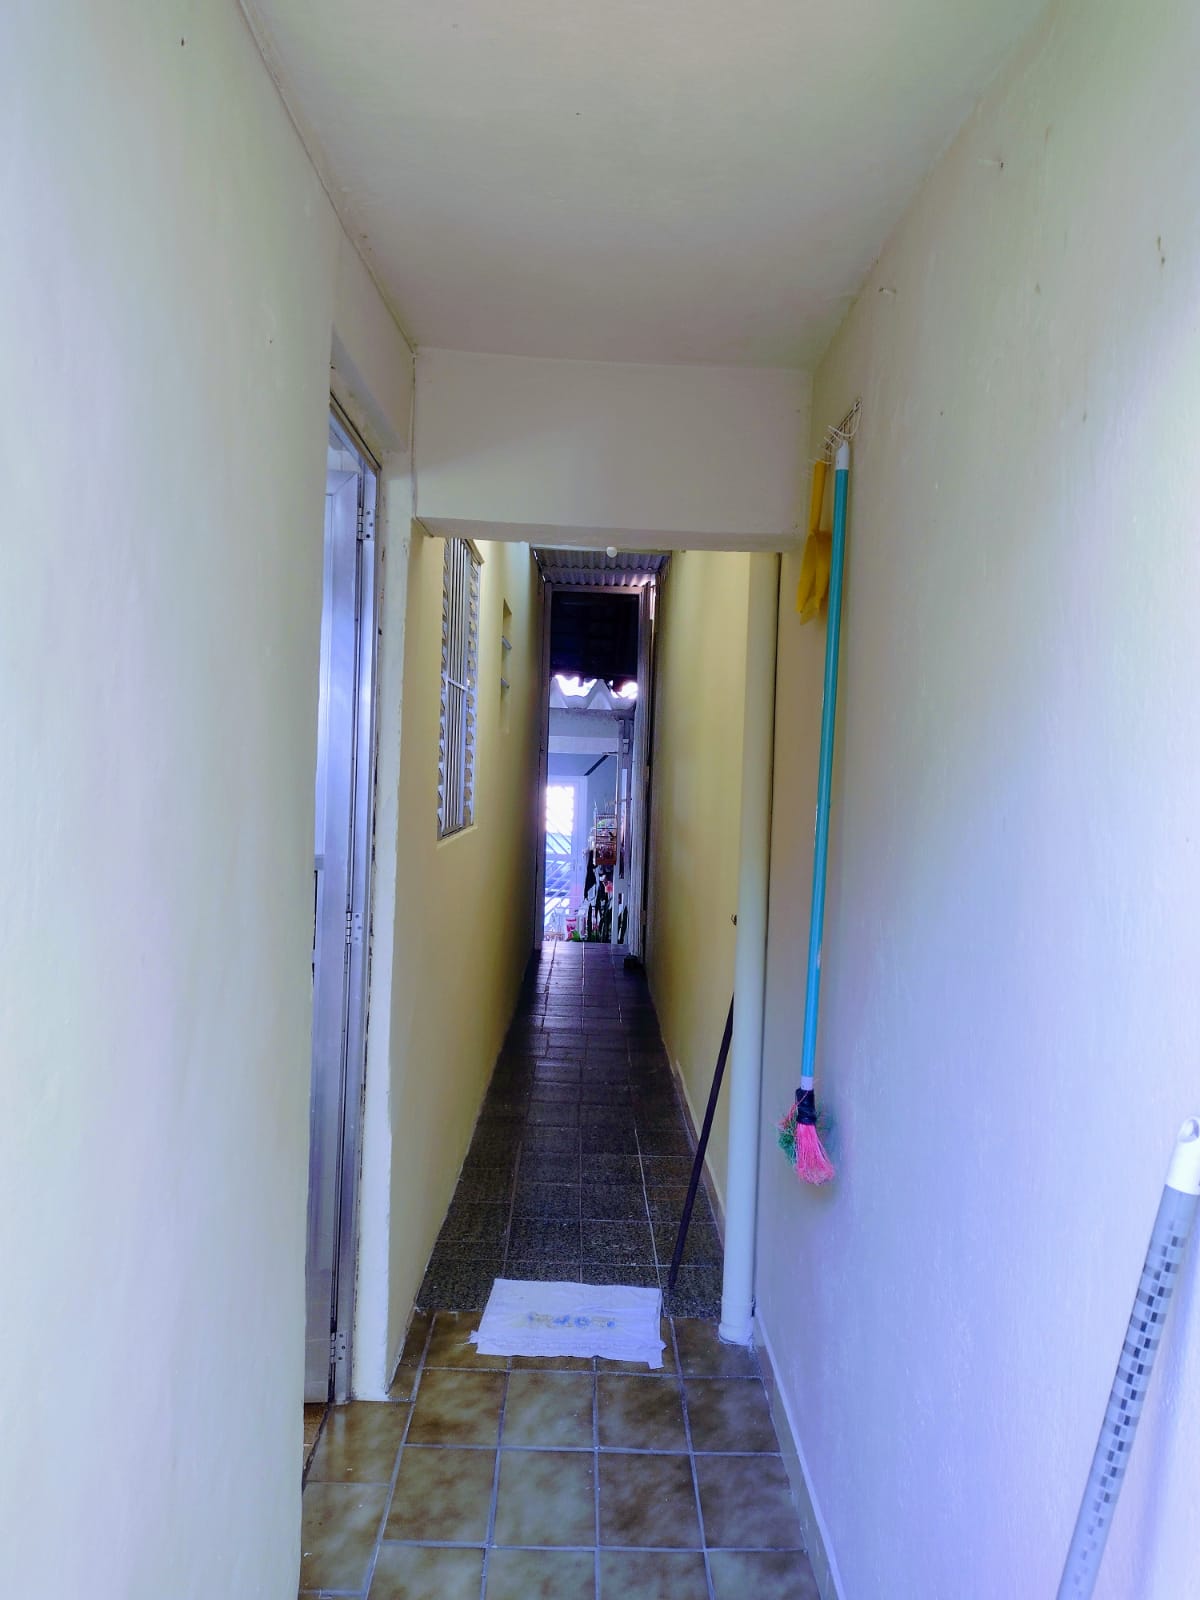 Casa com 4 quartos sendo 1 com suíte, sala, cozinha; local tranquilo | São Bernardo - SP  | código 1027